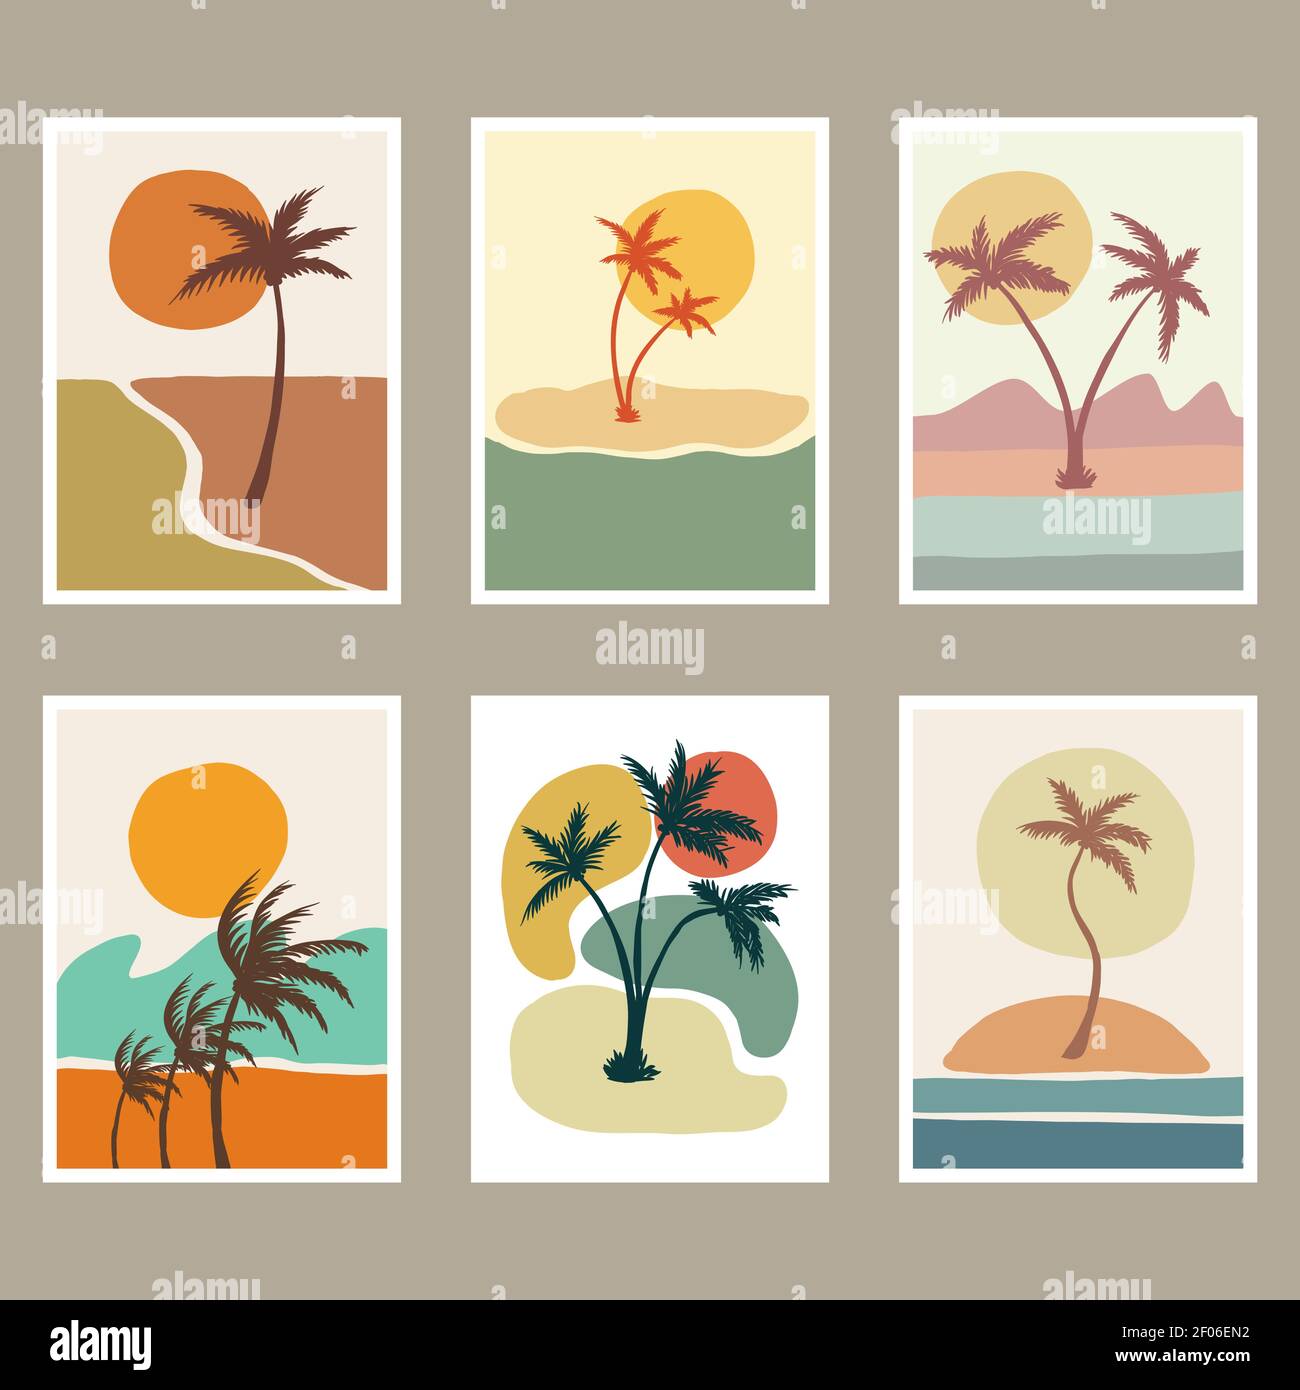 Illustrazione astratta della copertura del paesaggio della spiaggia per la vostra azienda o marca Illustrazione Vettoriale